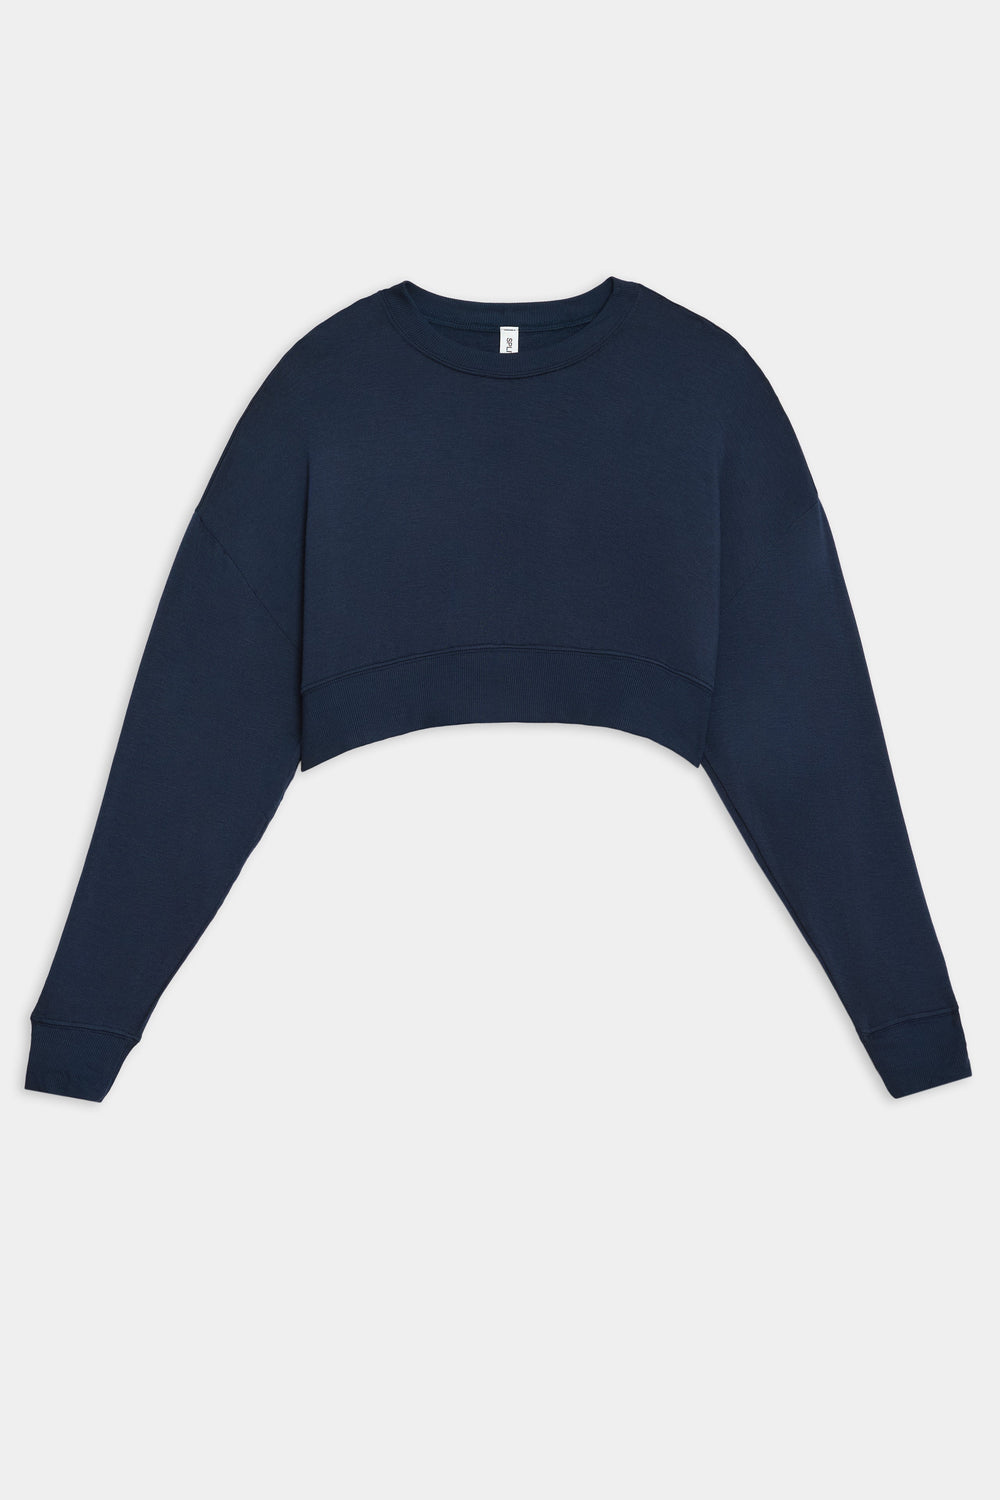 Splits59 Noah Fleece Crop Sweatshirt